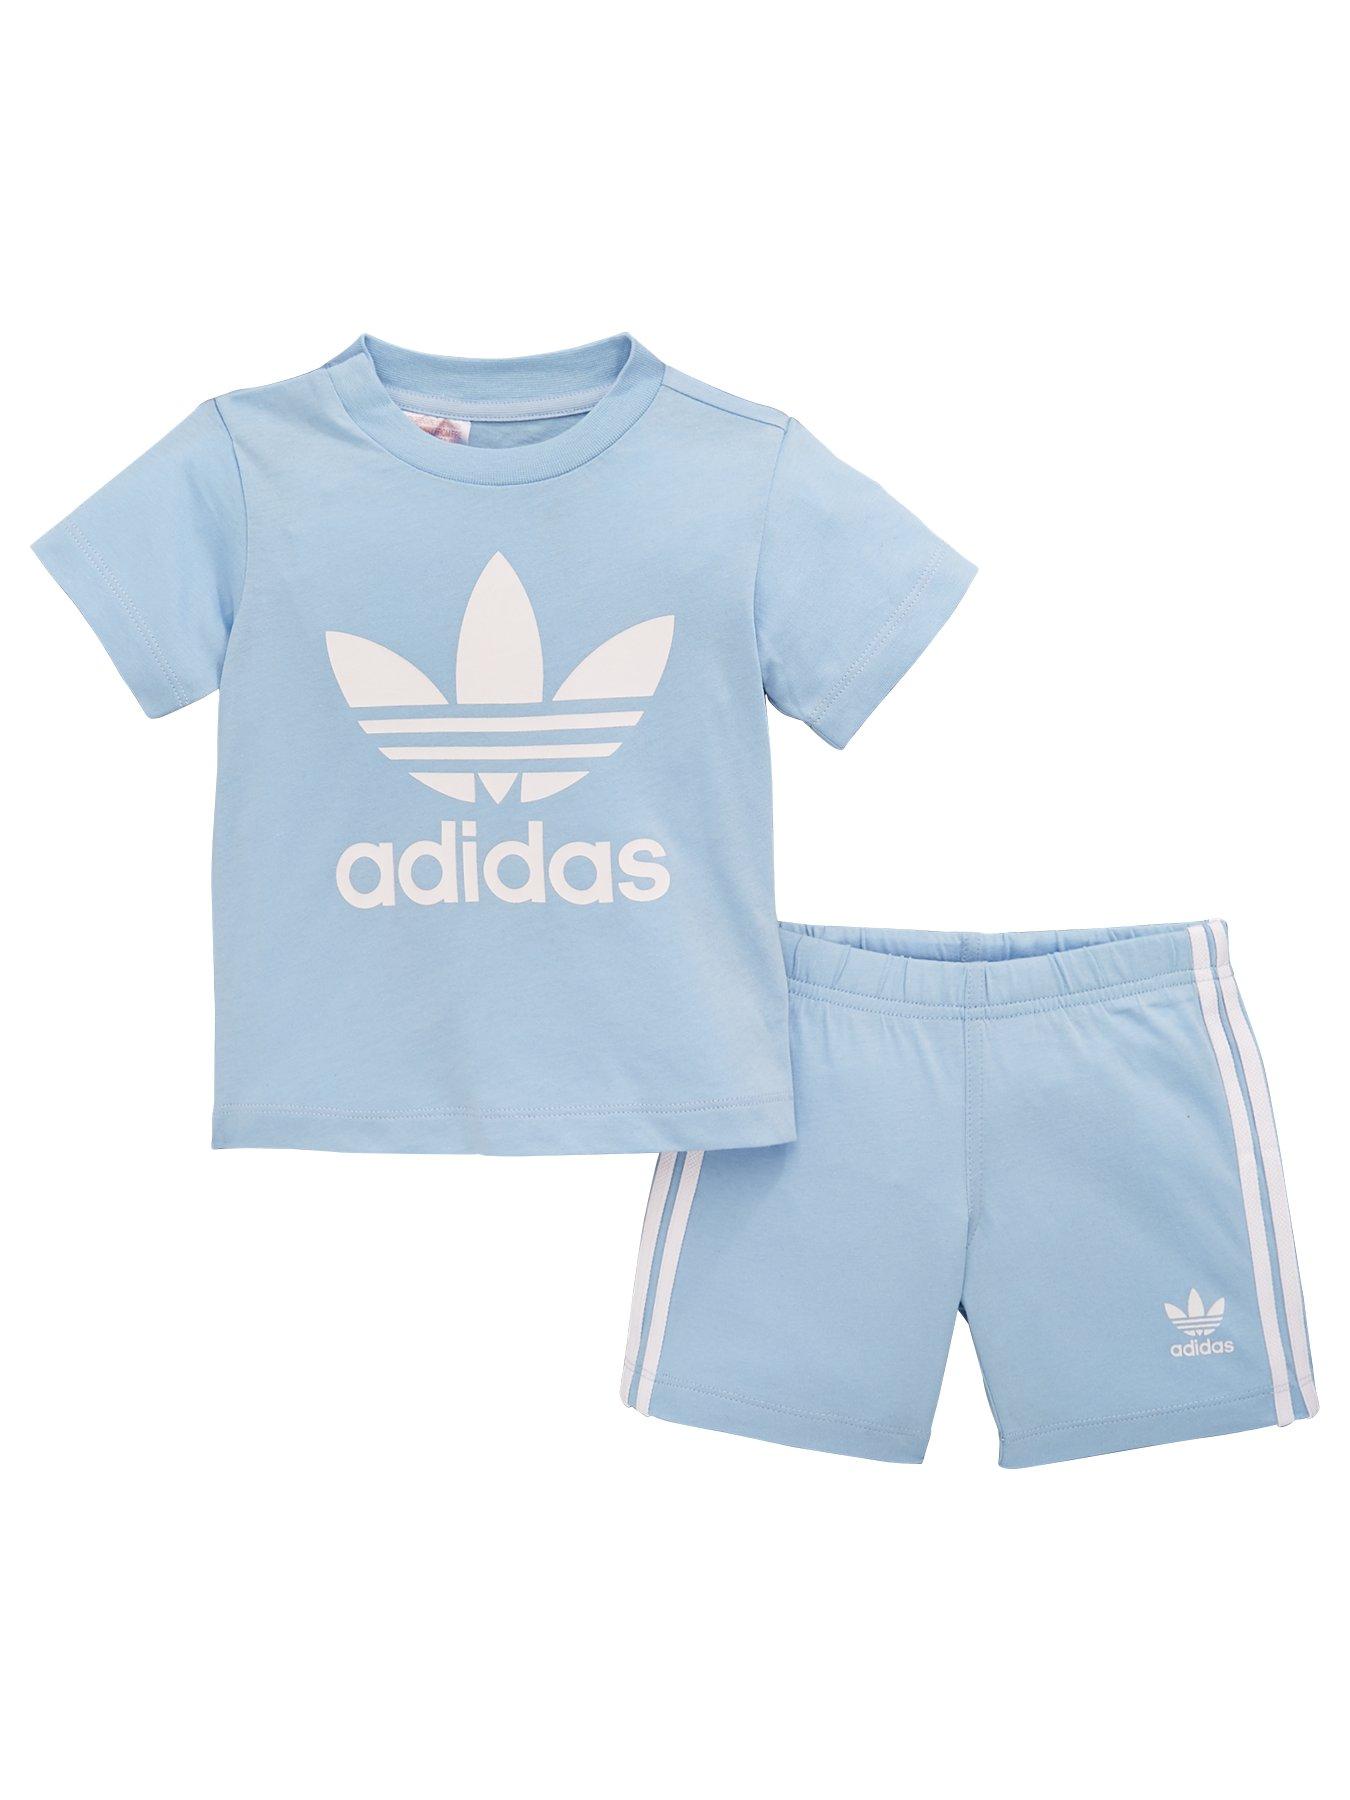 infant adidas short set